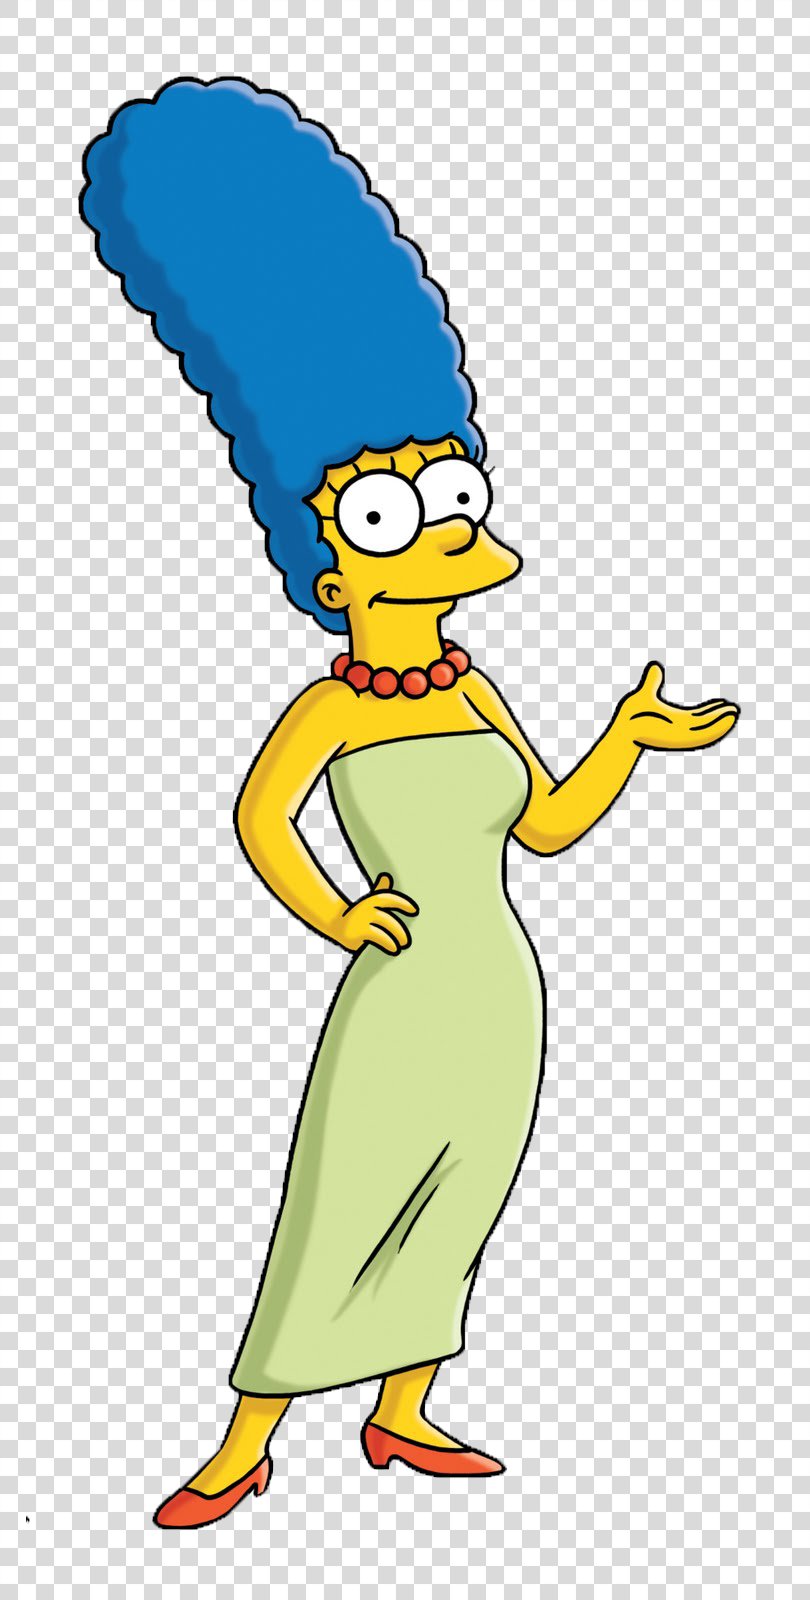 Marge Simpson Homer Simpson Lisa Simpson Maggie Simpson Bart Simpson, The Simpsons PNG